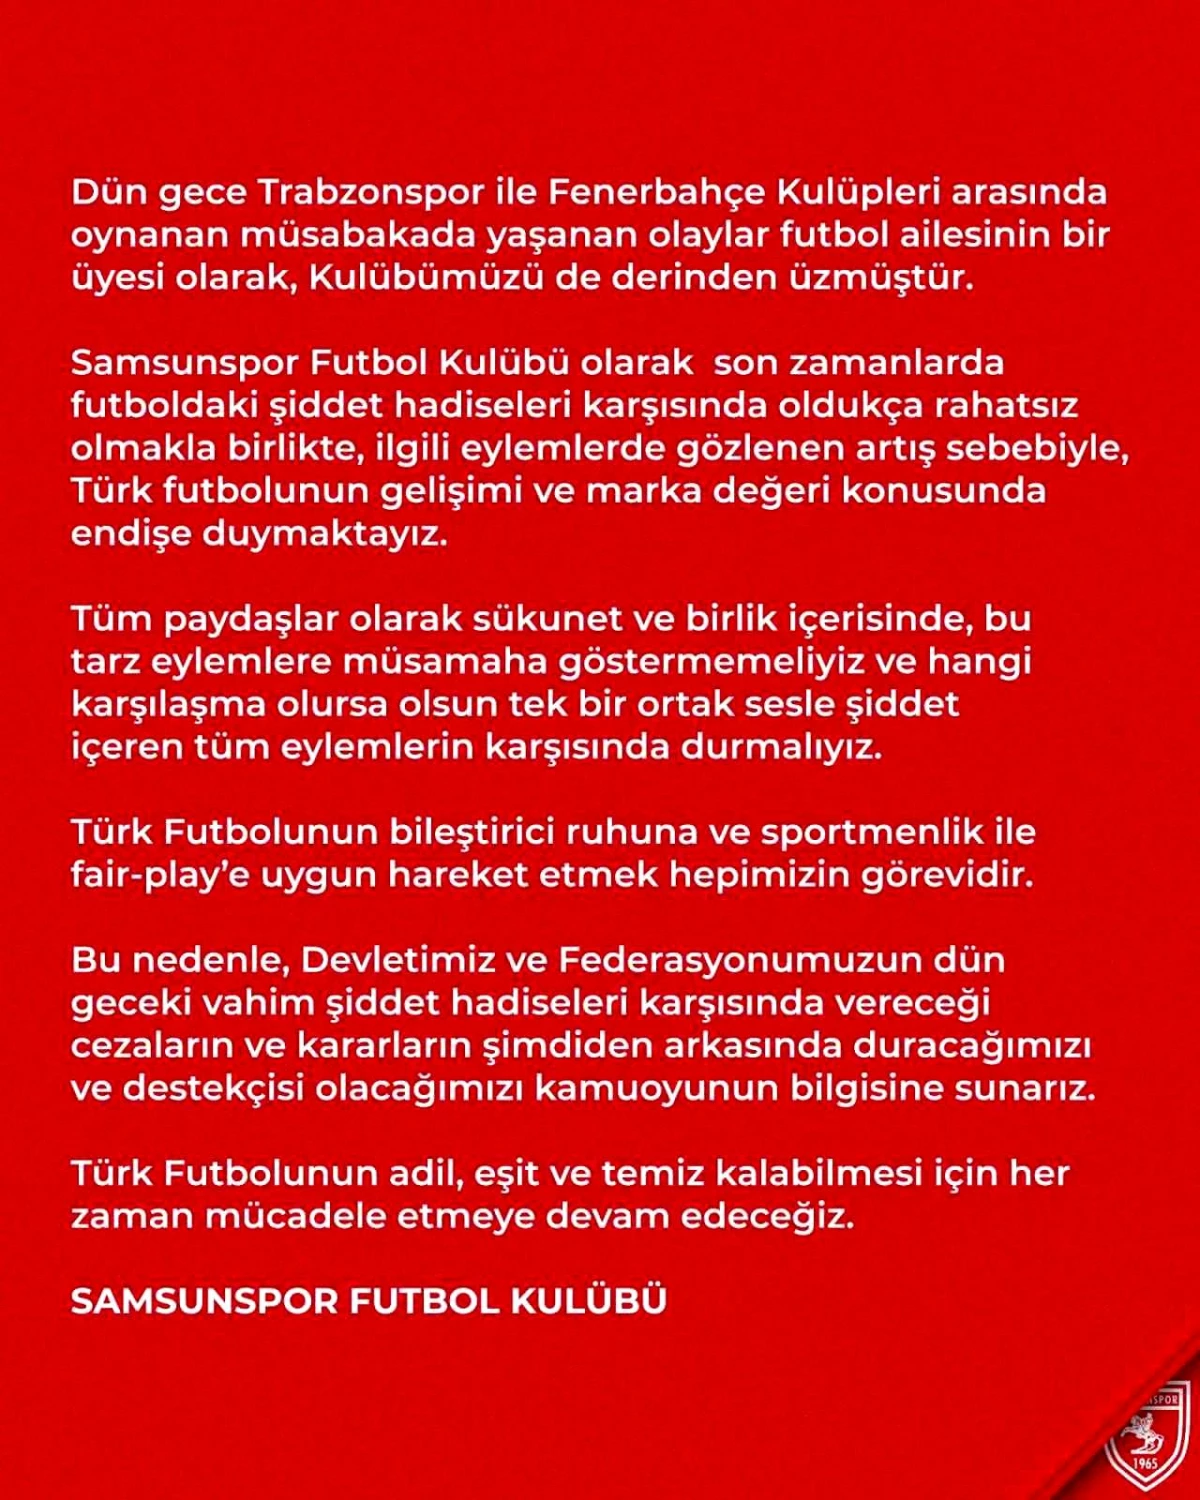 Samsunspor Kulübü, Trabzonspor - Fenerbahçe Maçı Sonrası Yaşanan Olaylar Hakkında Açıklama Yaptı